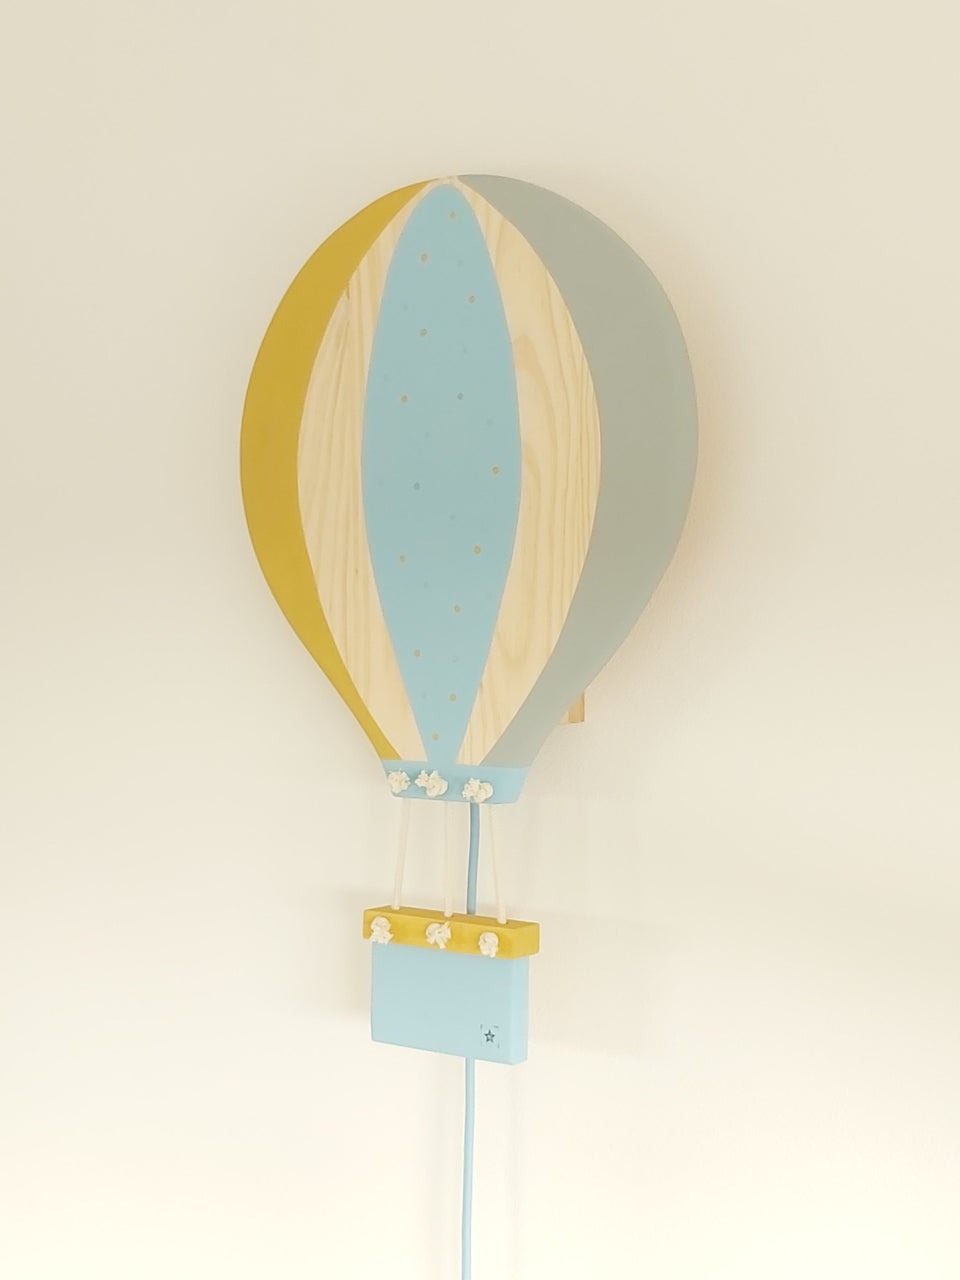 Candeeiro parede Balão Ar Quente Mostarda - Hot Air Balloon wall Lamp Mustard